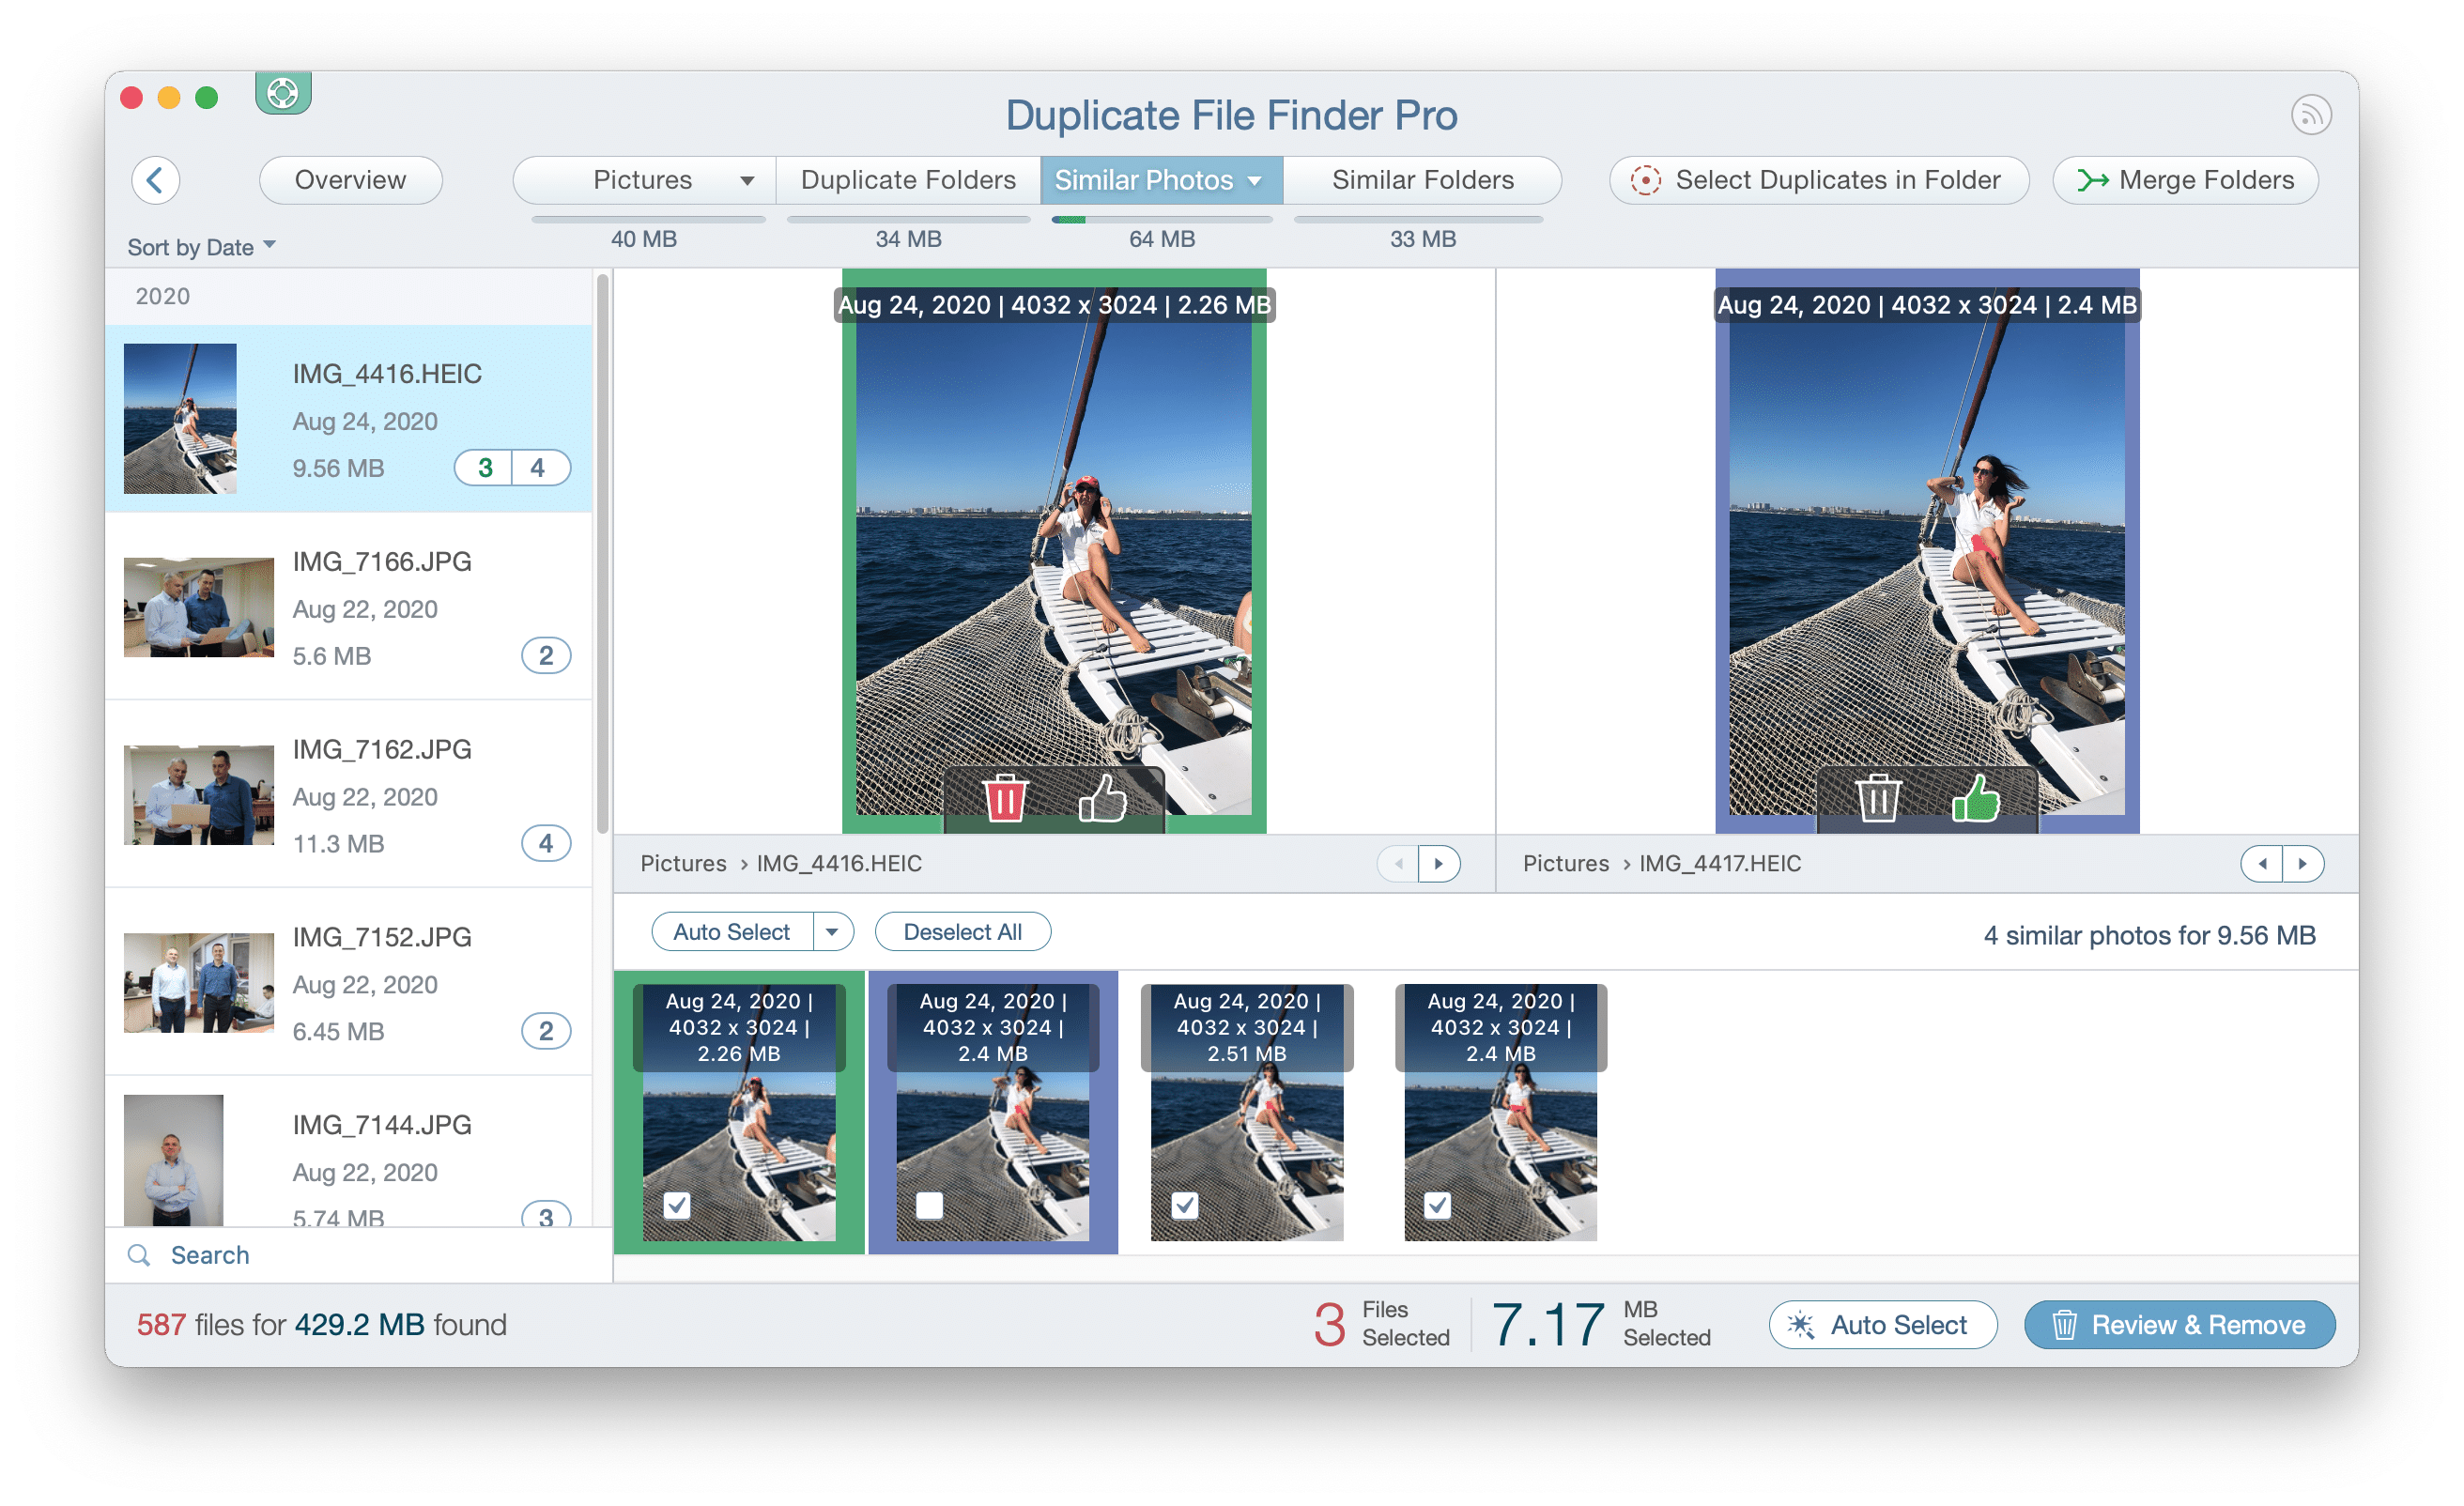 Duplicate File Finder showing similar photos